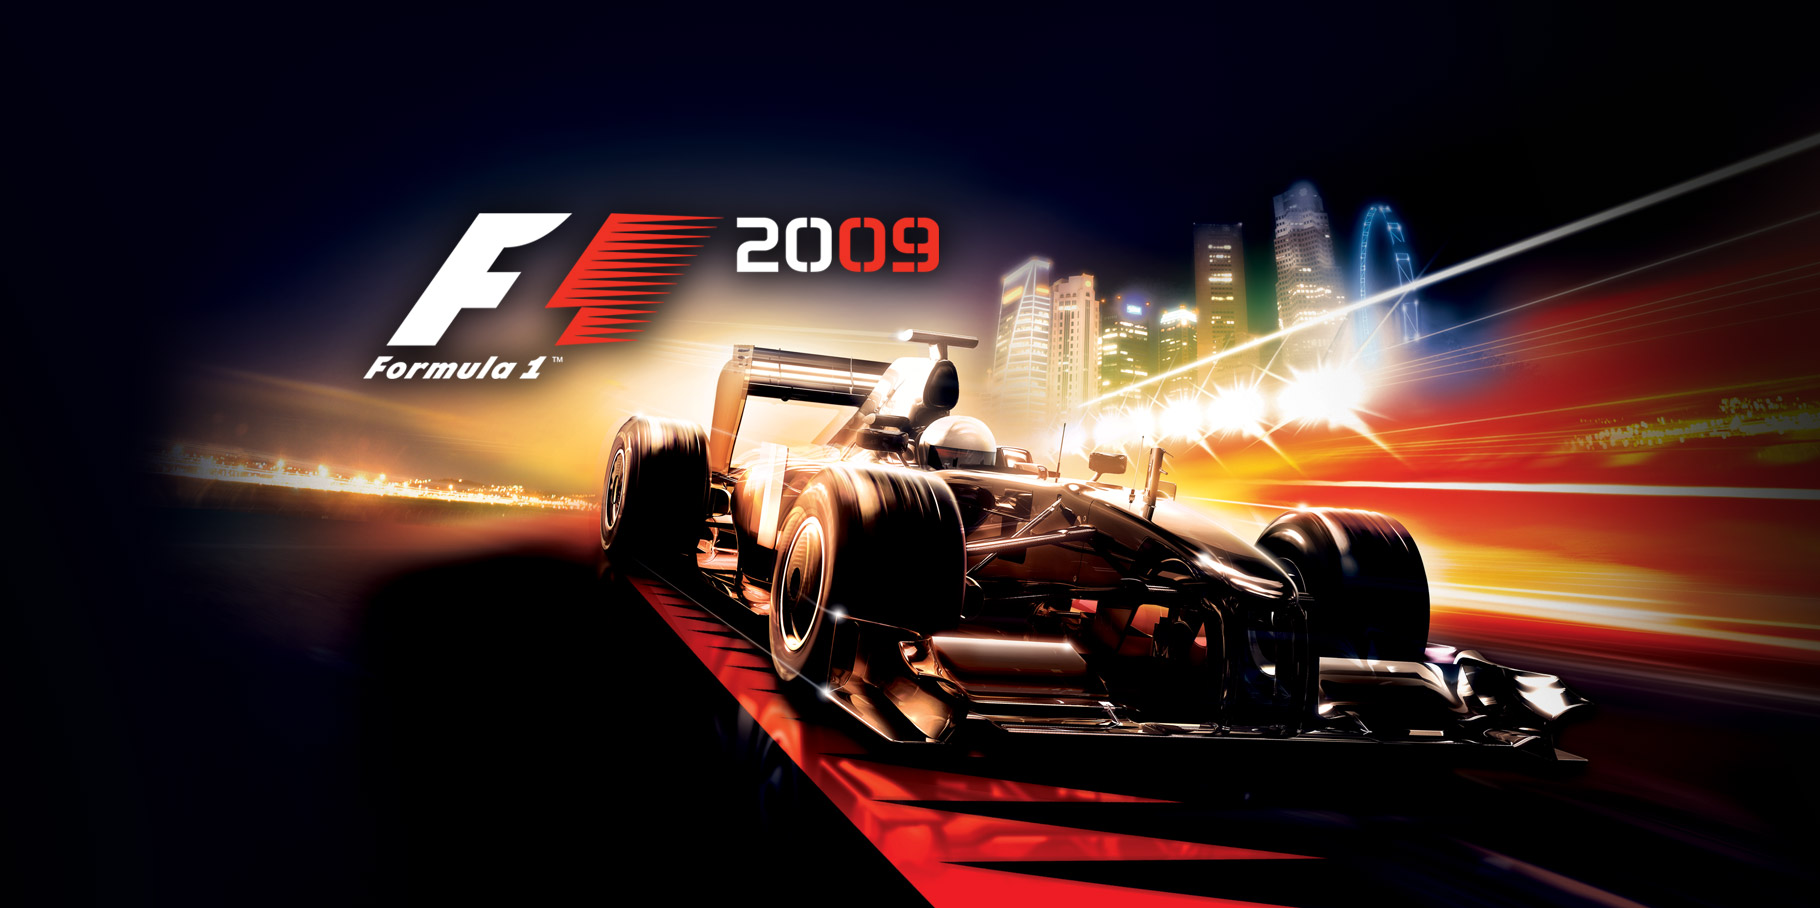 Artwork for F1 2009